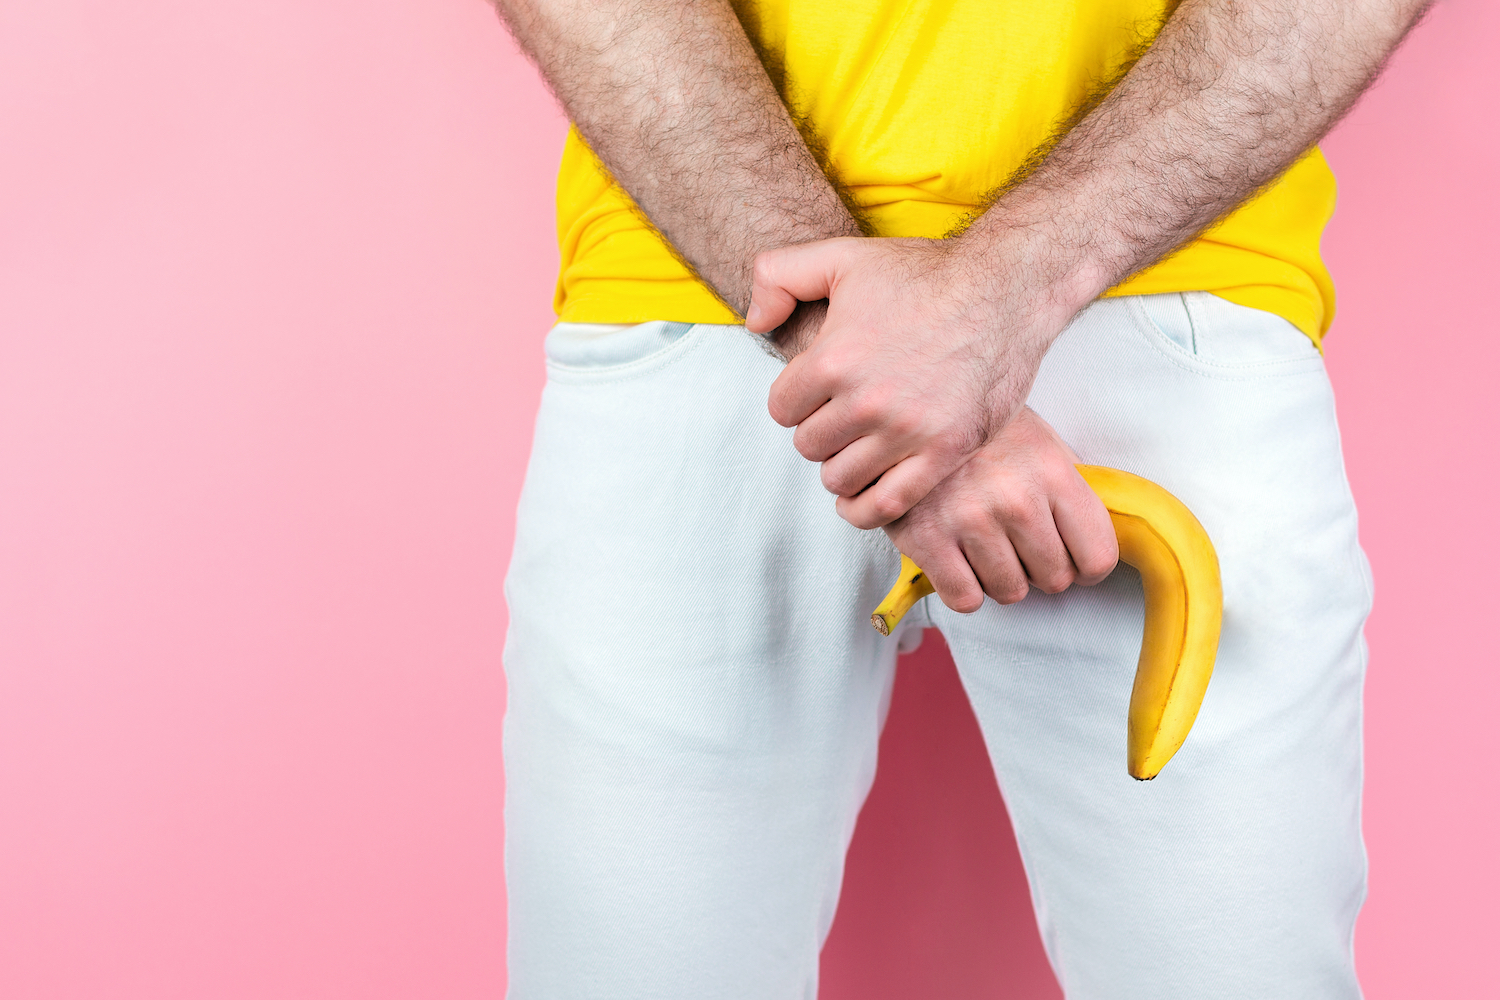 Hängende Banana als Symbolbild für Sexuelle Unlust beim Mann